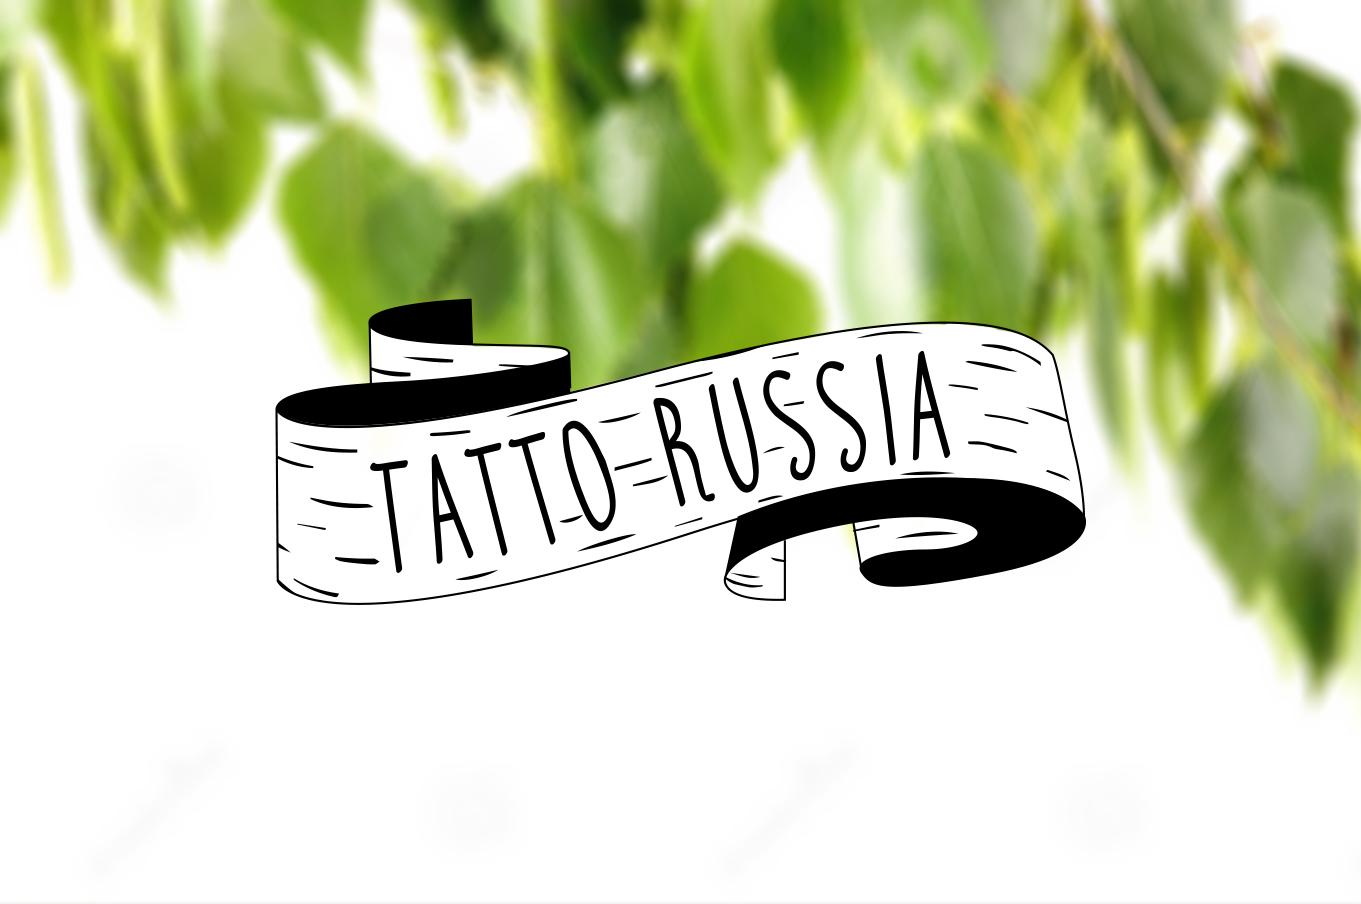 tattoo-russia-logotip2